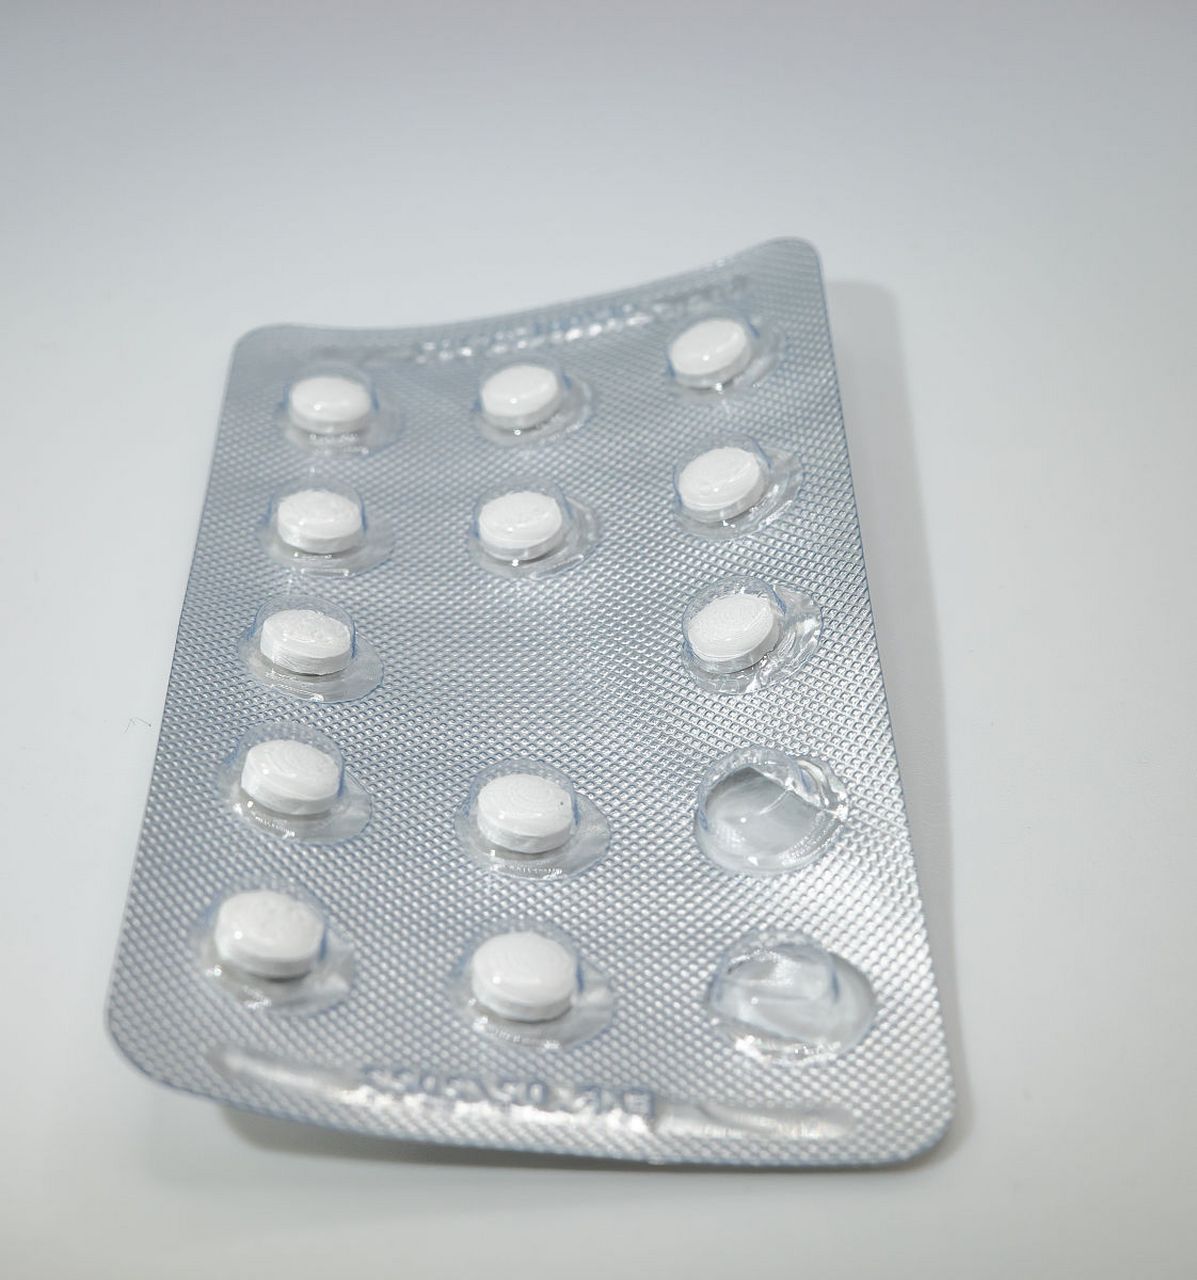 洒石唑吡坦片可能是指酒石酸唑吡坦片,具有治疗严重睡眠障碍的功效与